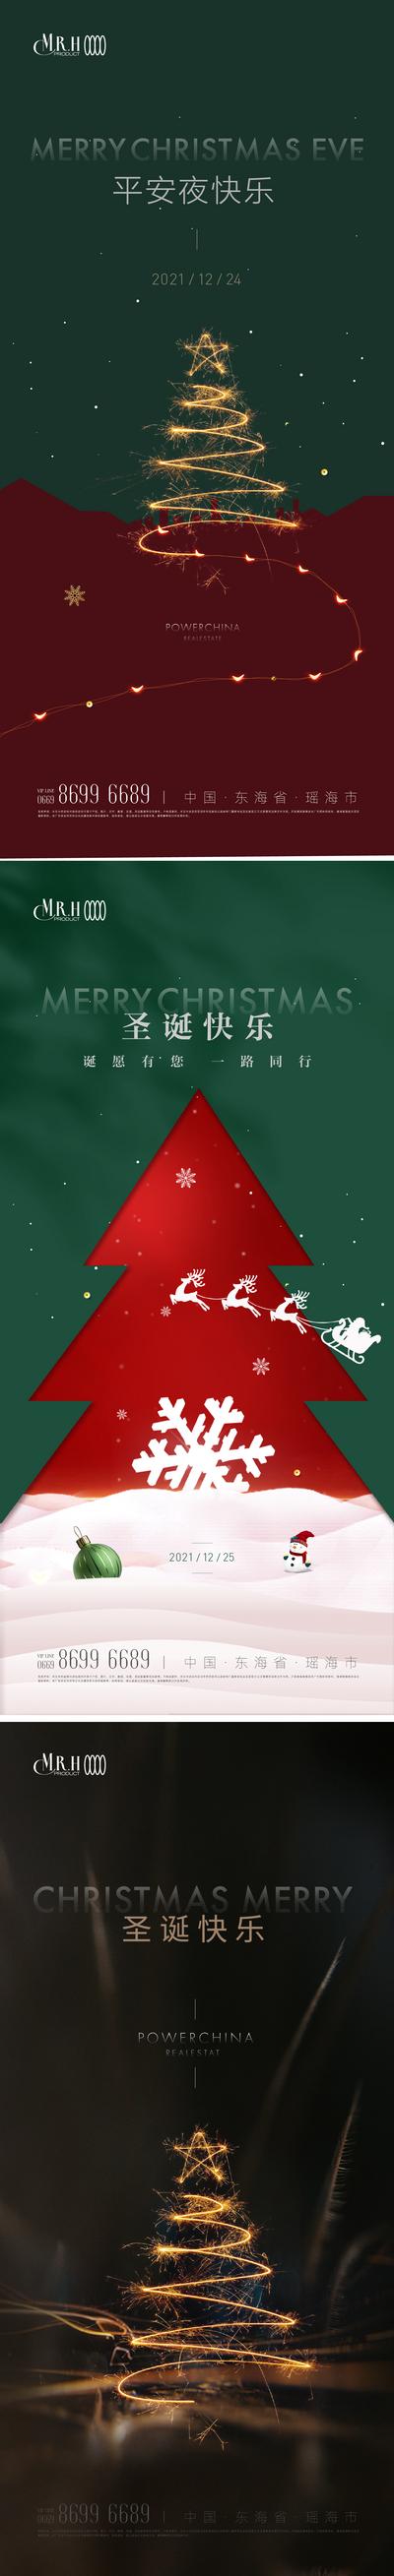 南门网 海报 公历节日 圣诞节 绿金 灯光 圣诞树 插画 系列